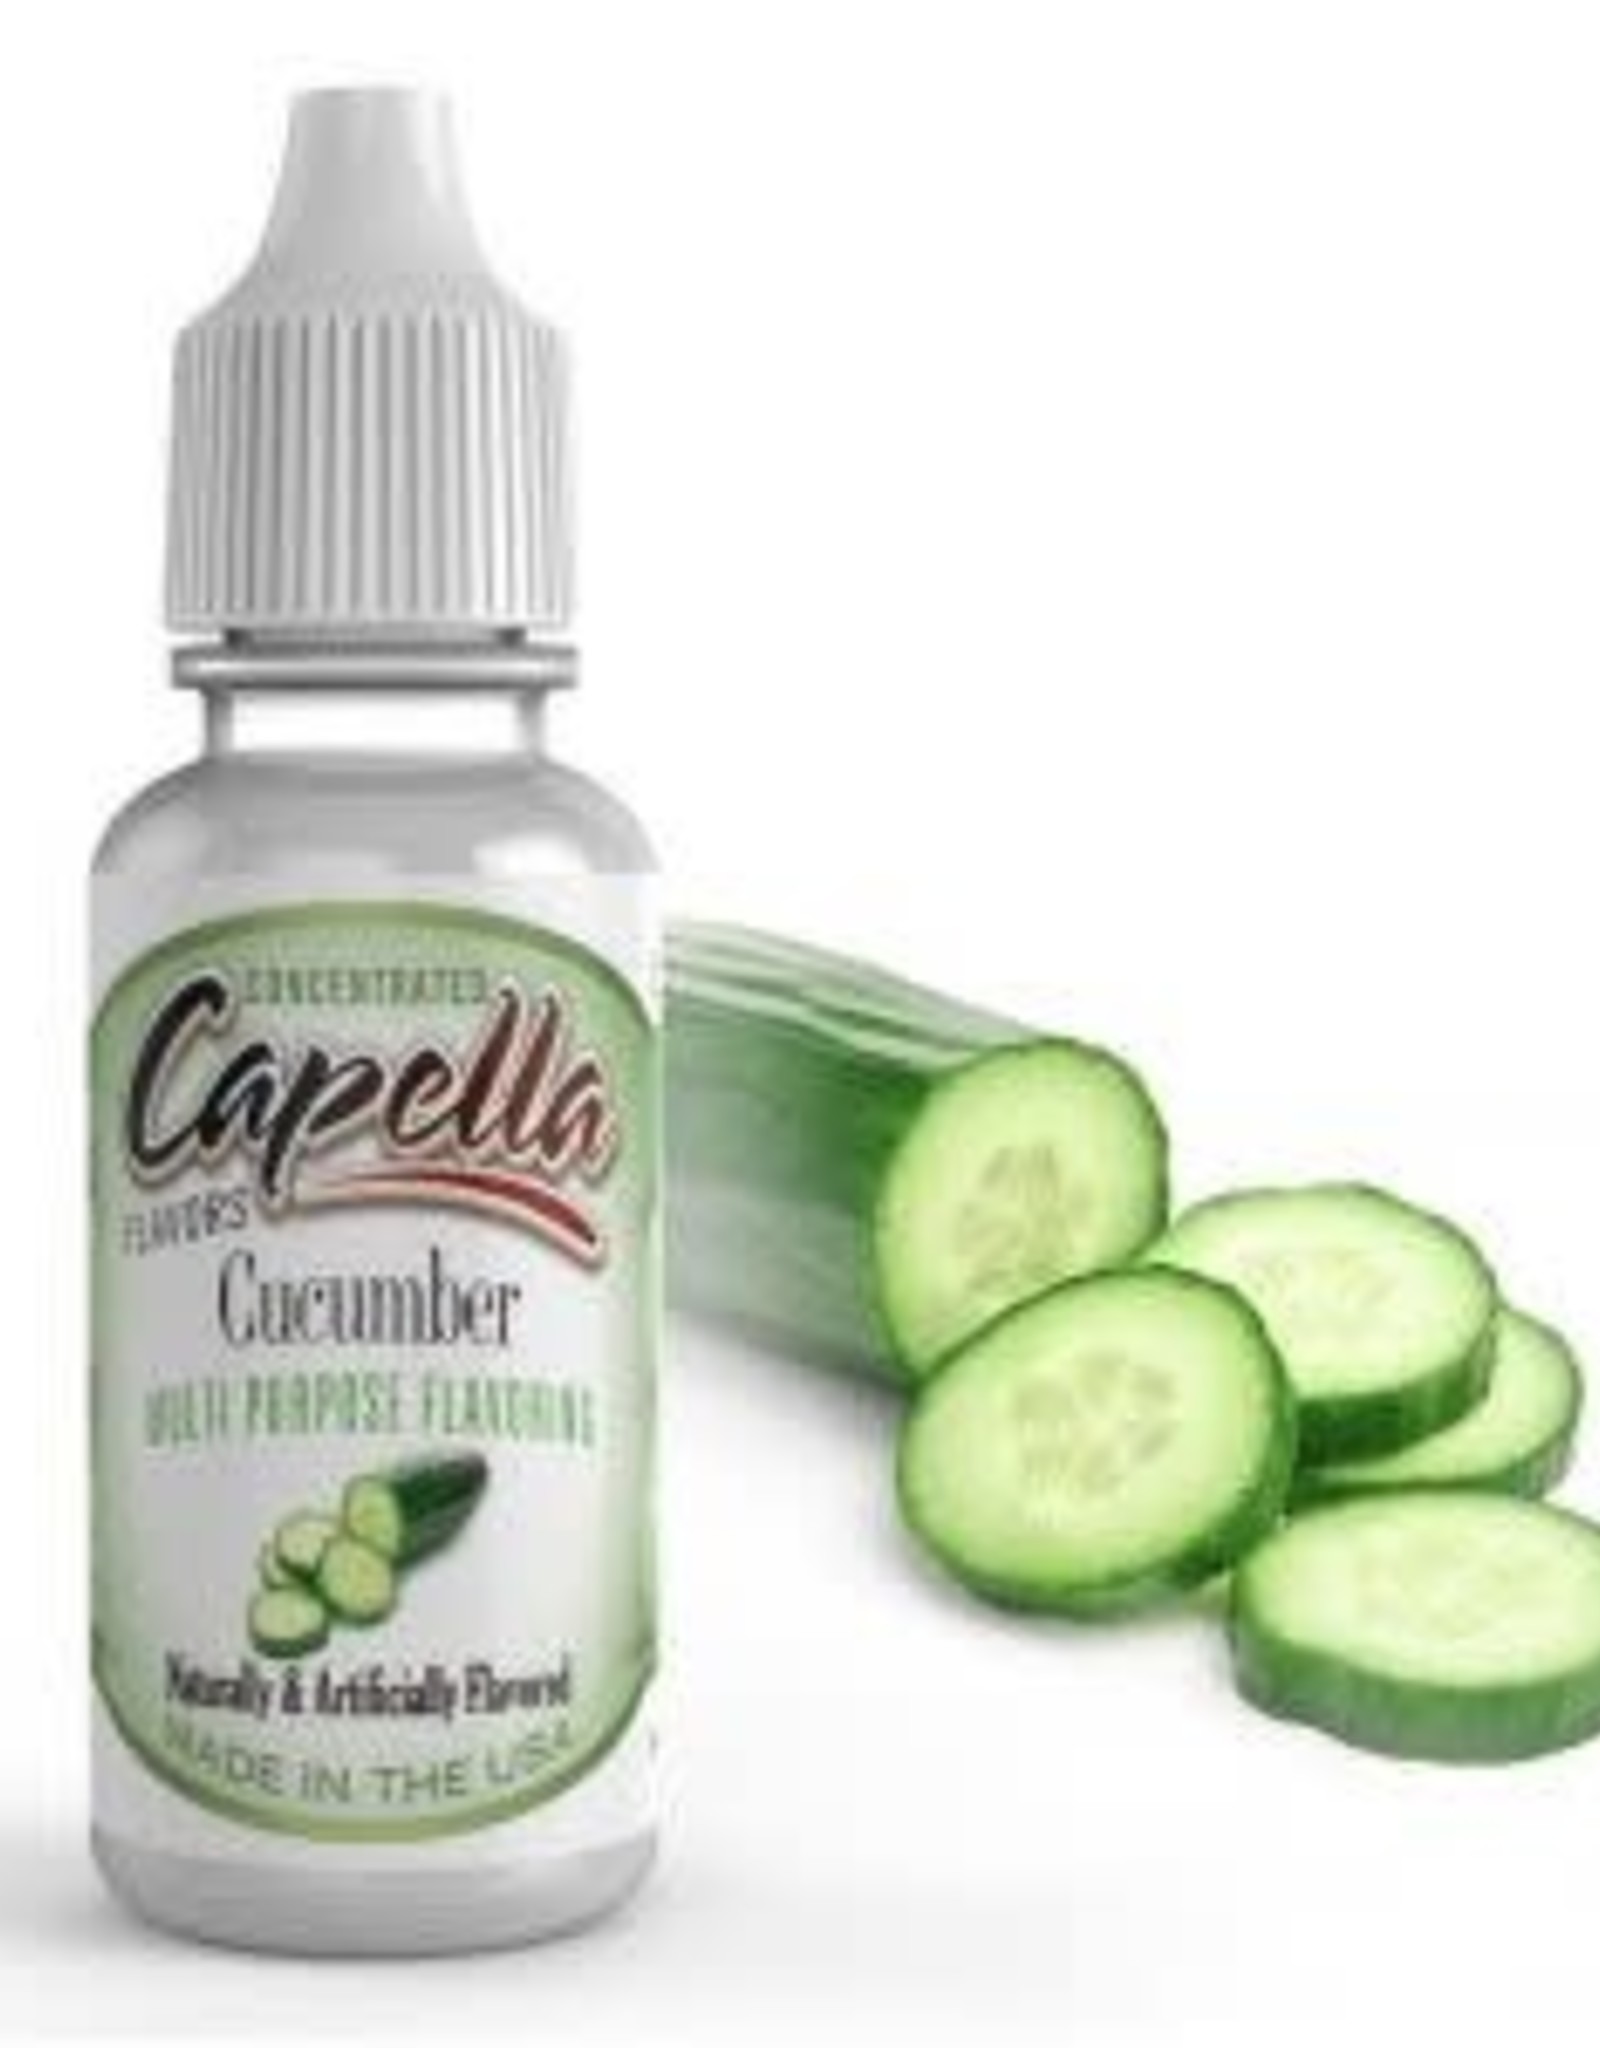 Capella Capella - Cucumber Aroma 13ml